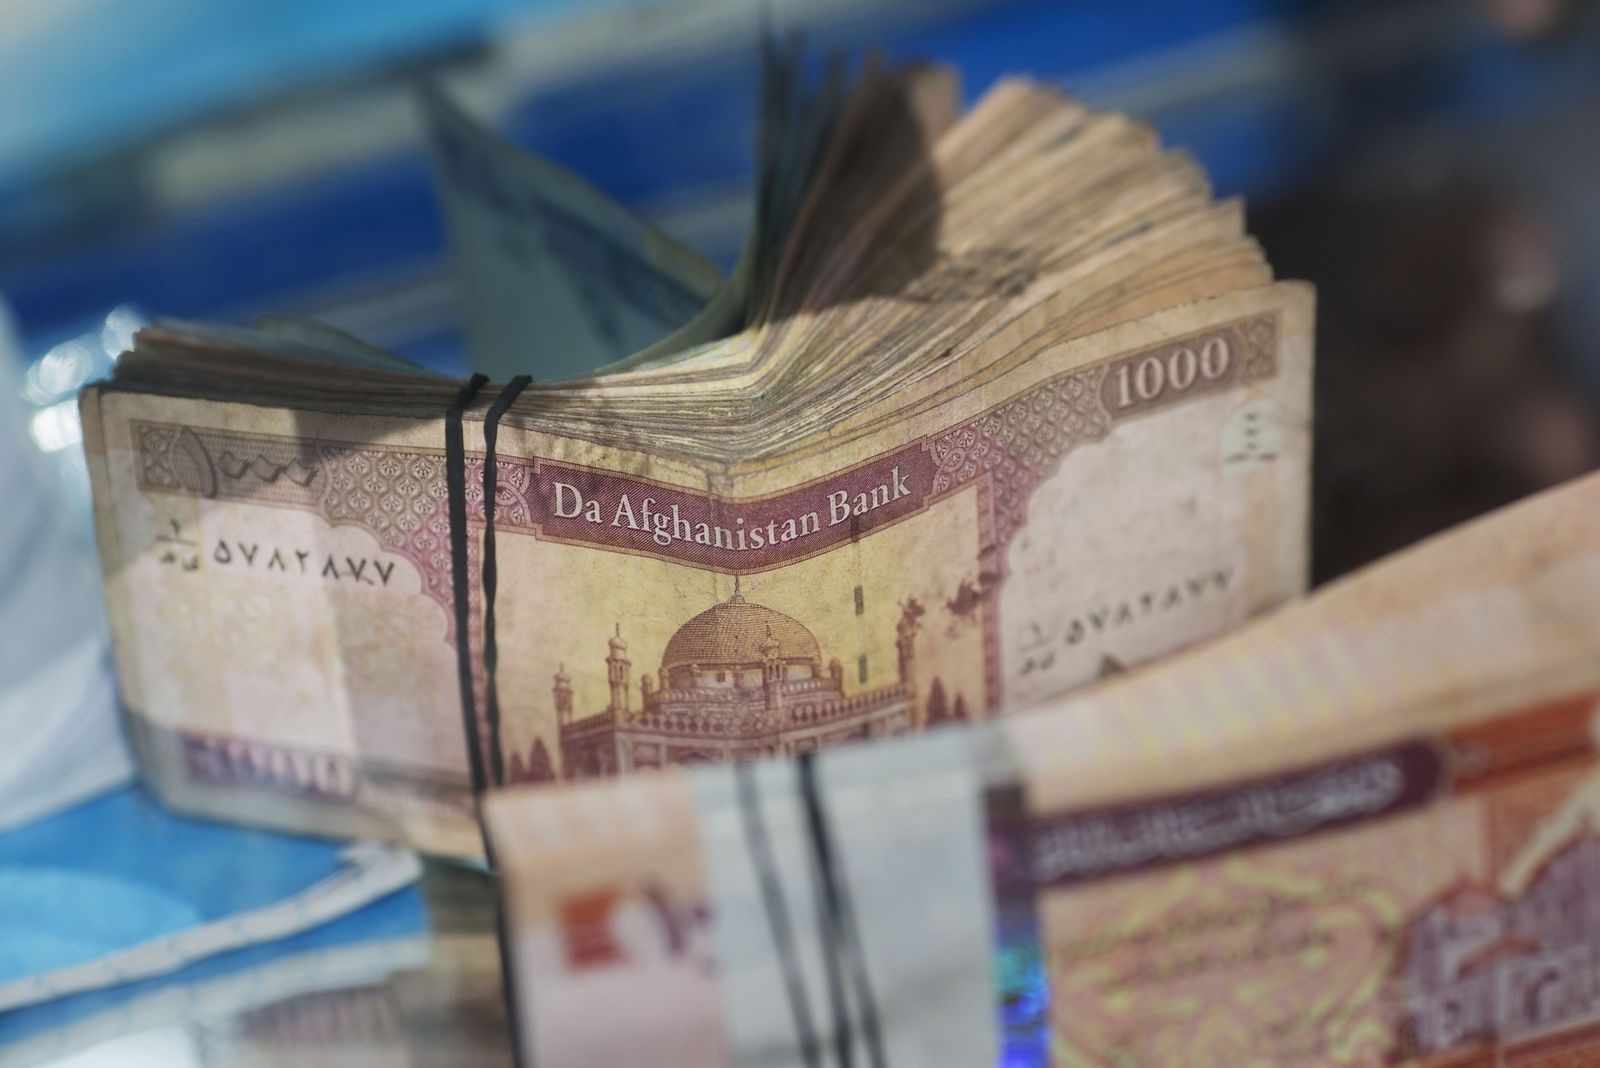 أوراق نقدية أفغانية لدى صراف في أفغانستان - 6 أغسطس 2013 - Bloomberg